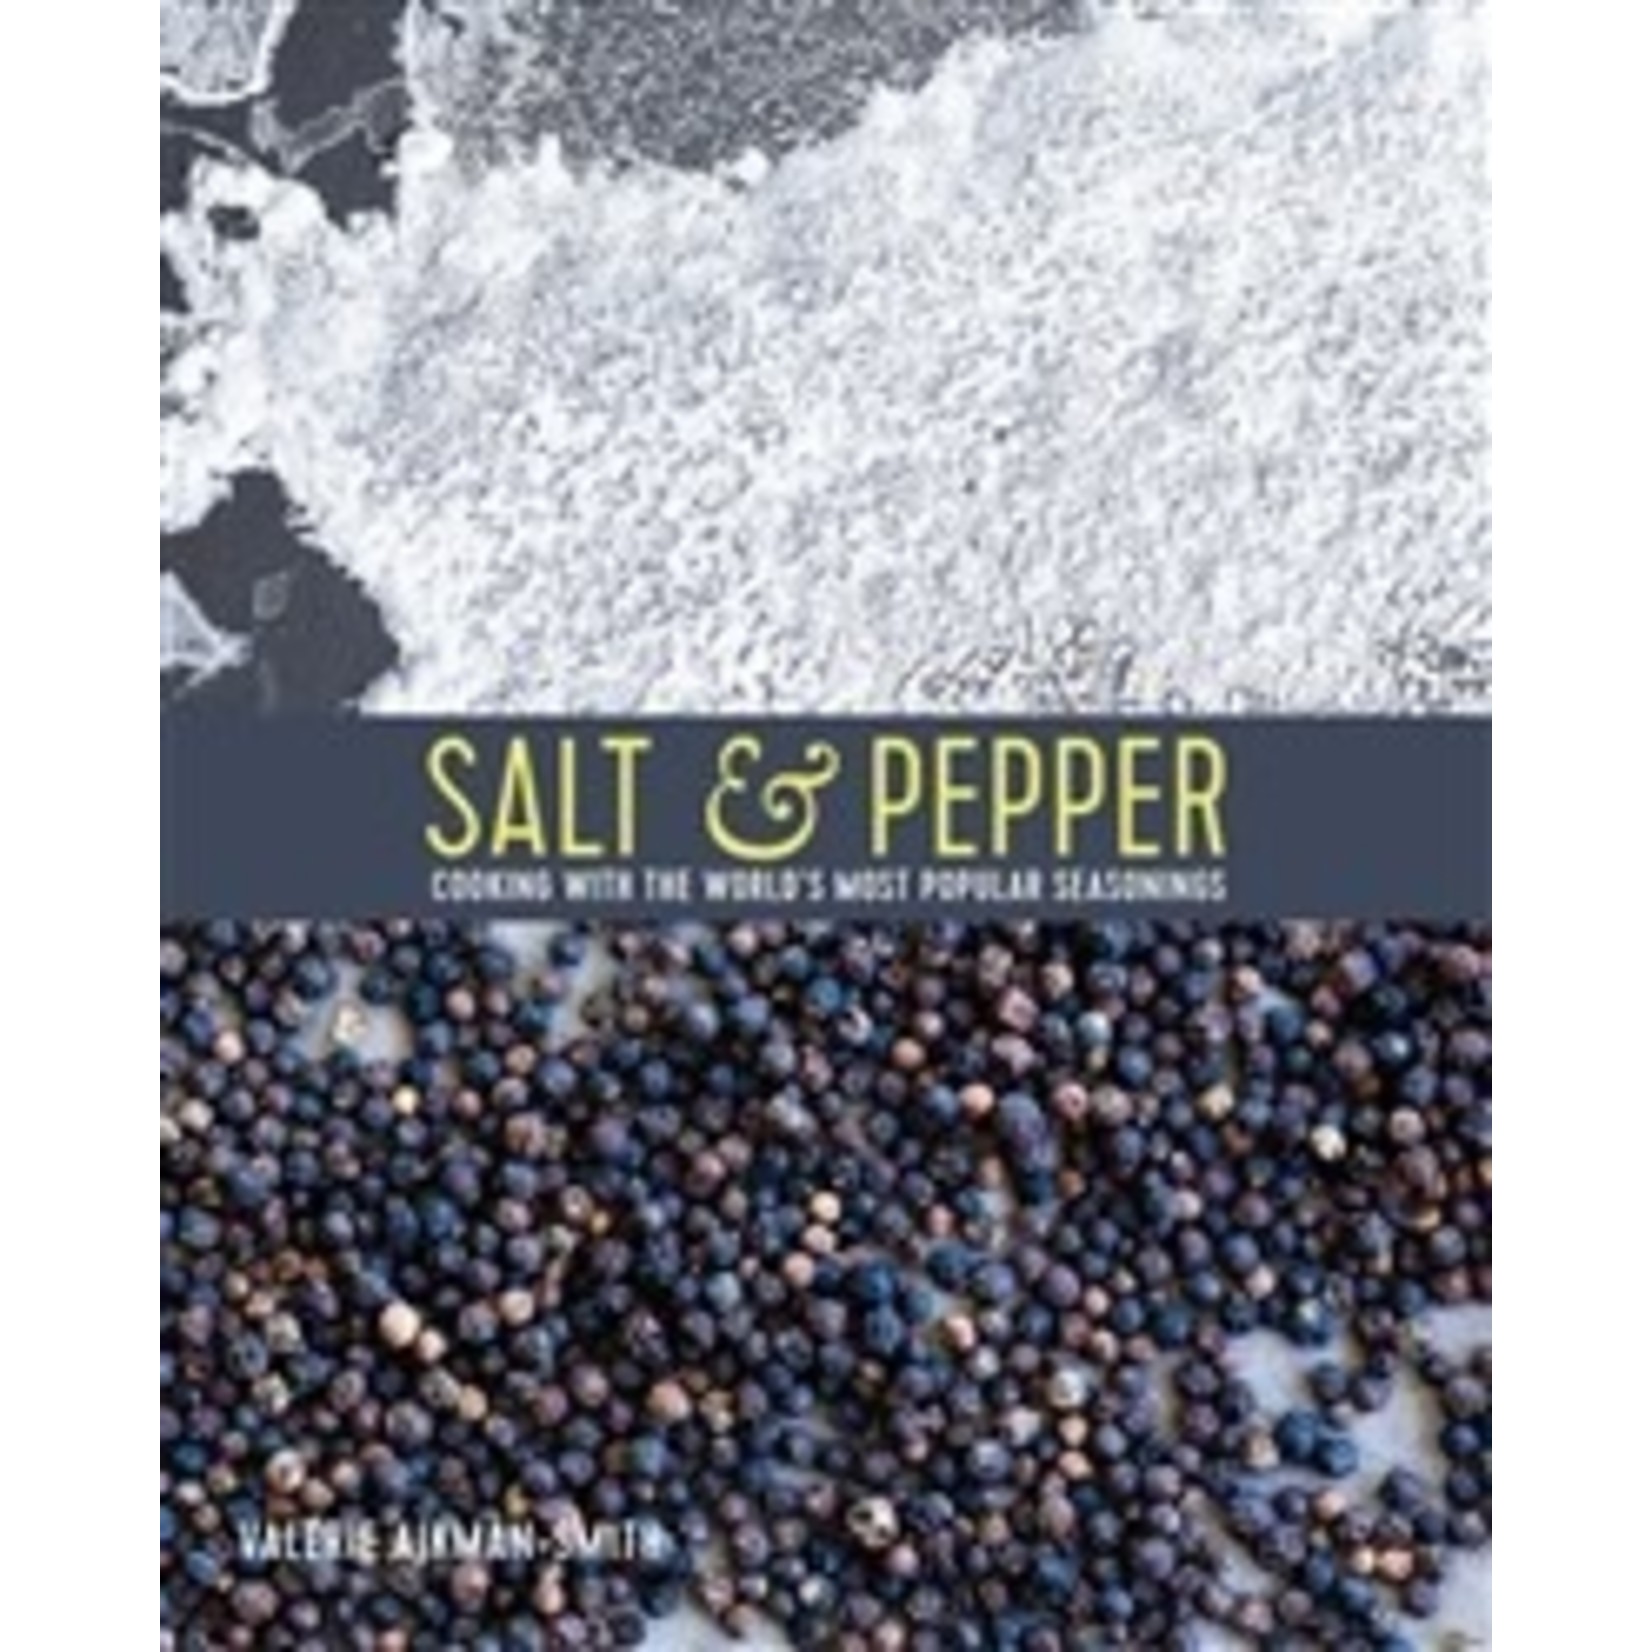 Salt & Pepper book